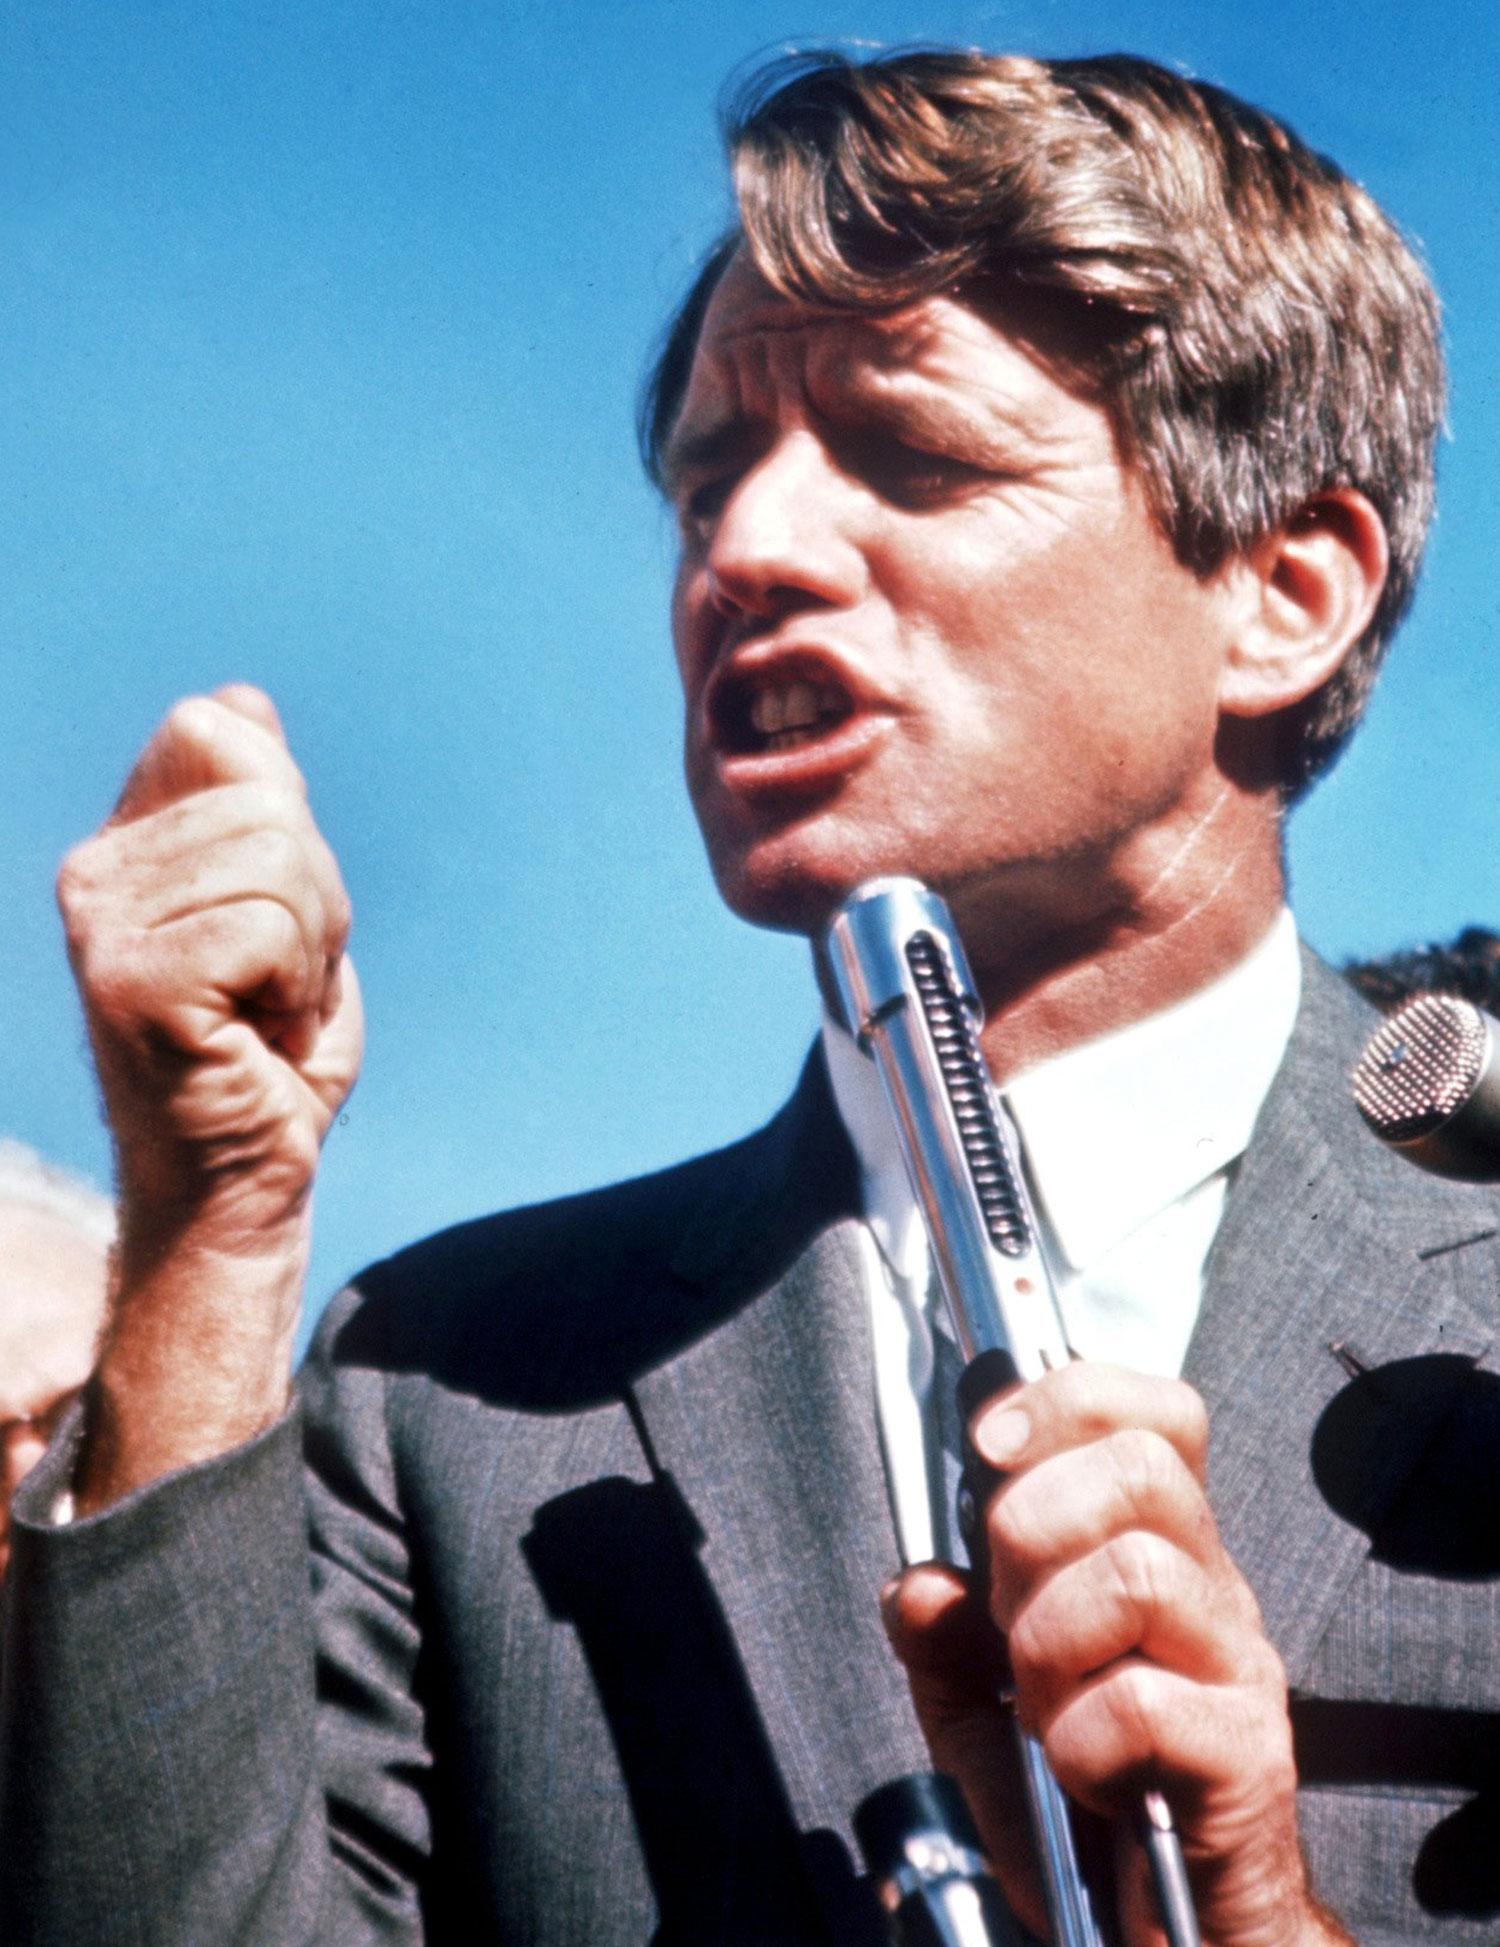 Robert F Kennedy håller tal 1968 – samma år som han mördades.